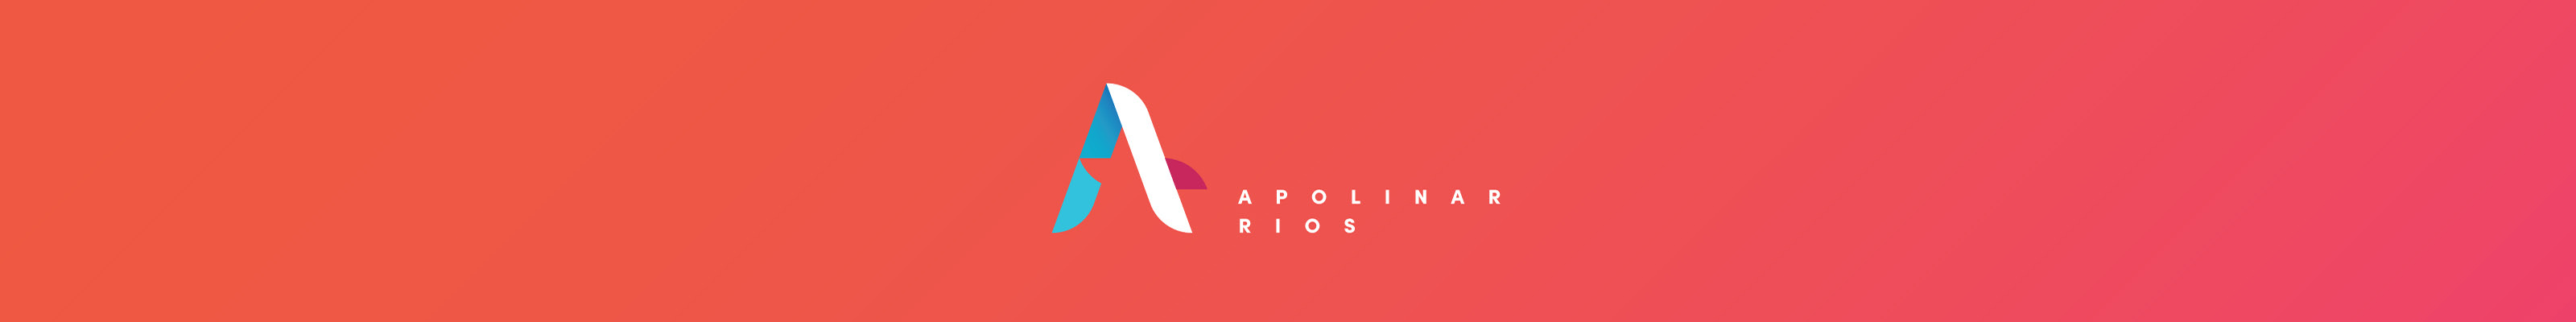 Apolinar Ríos's profile banner